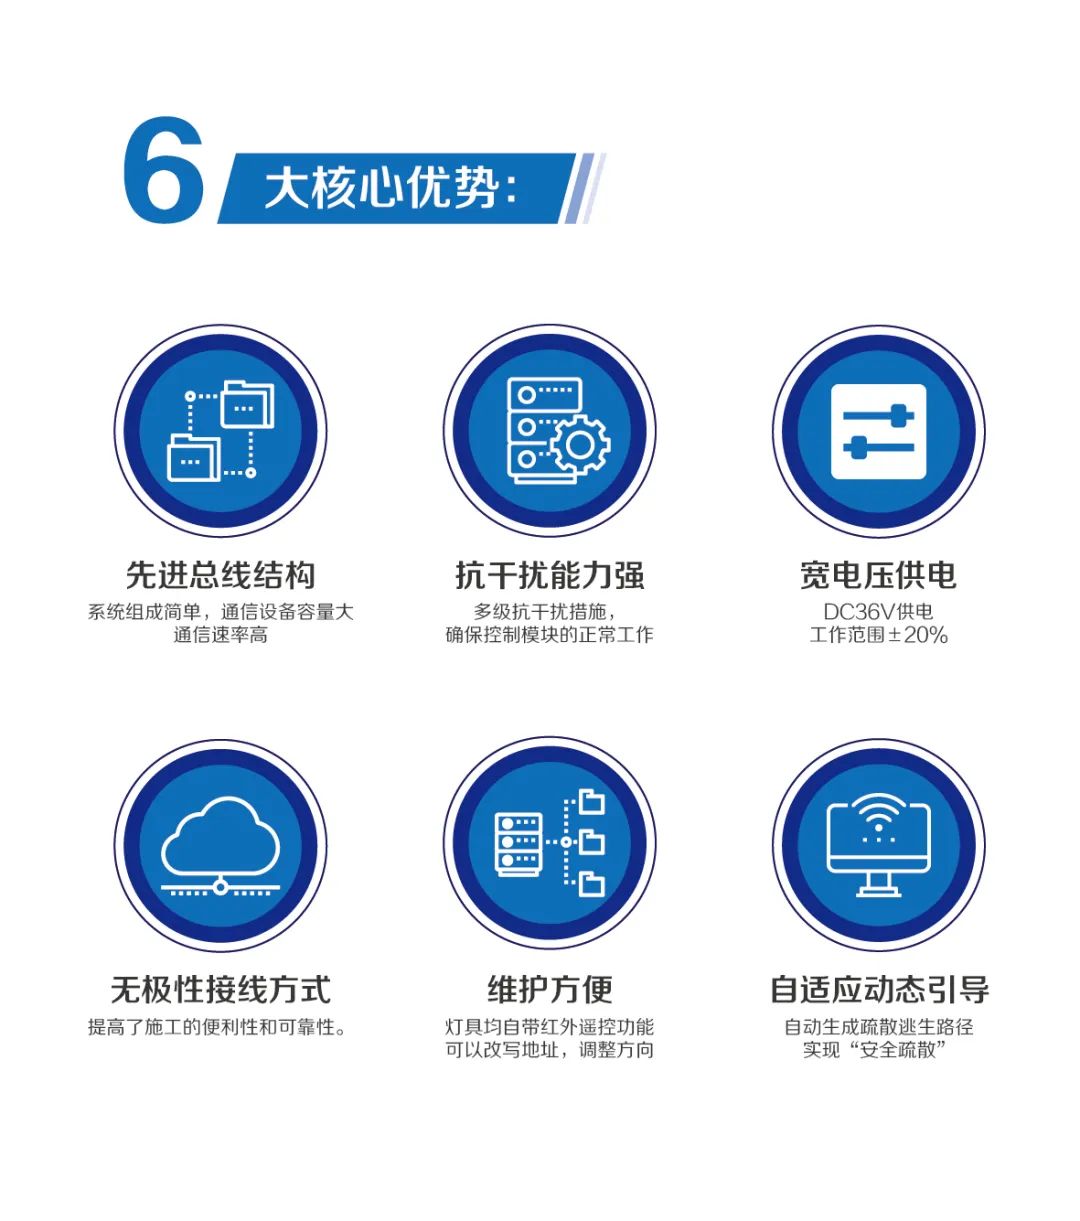 阳浦科技:轨道交通行业专业设备制造商w6.jpg